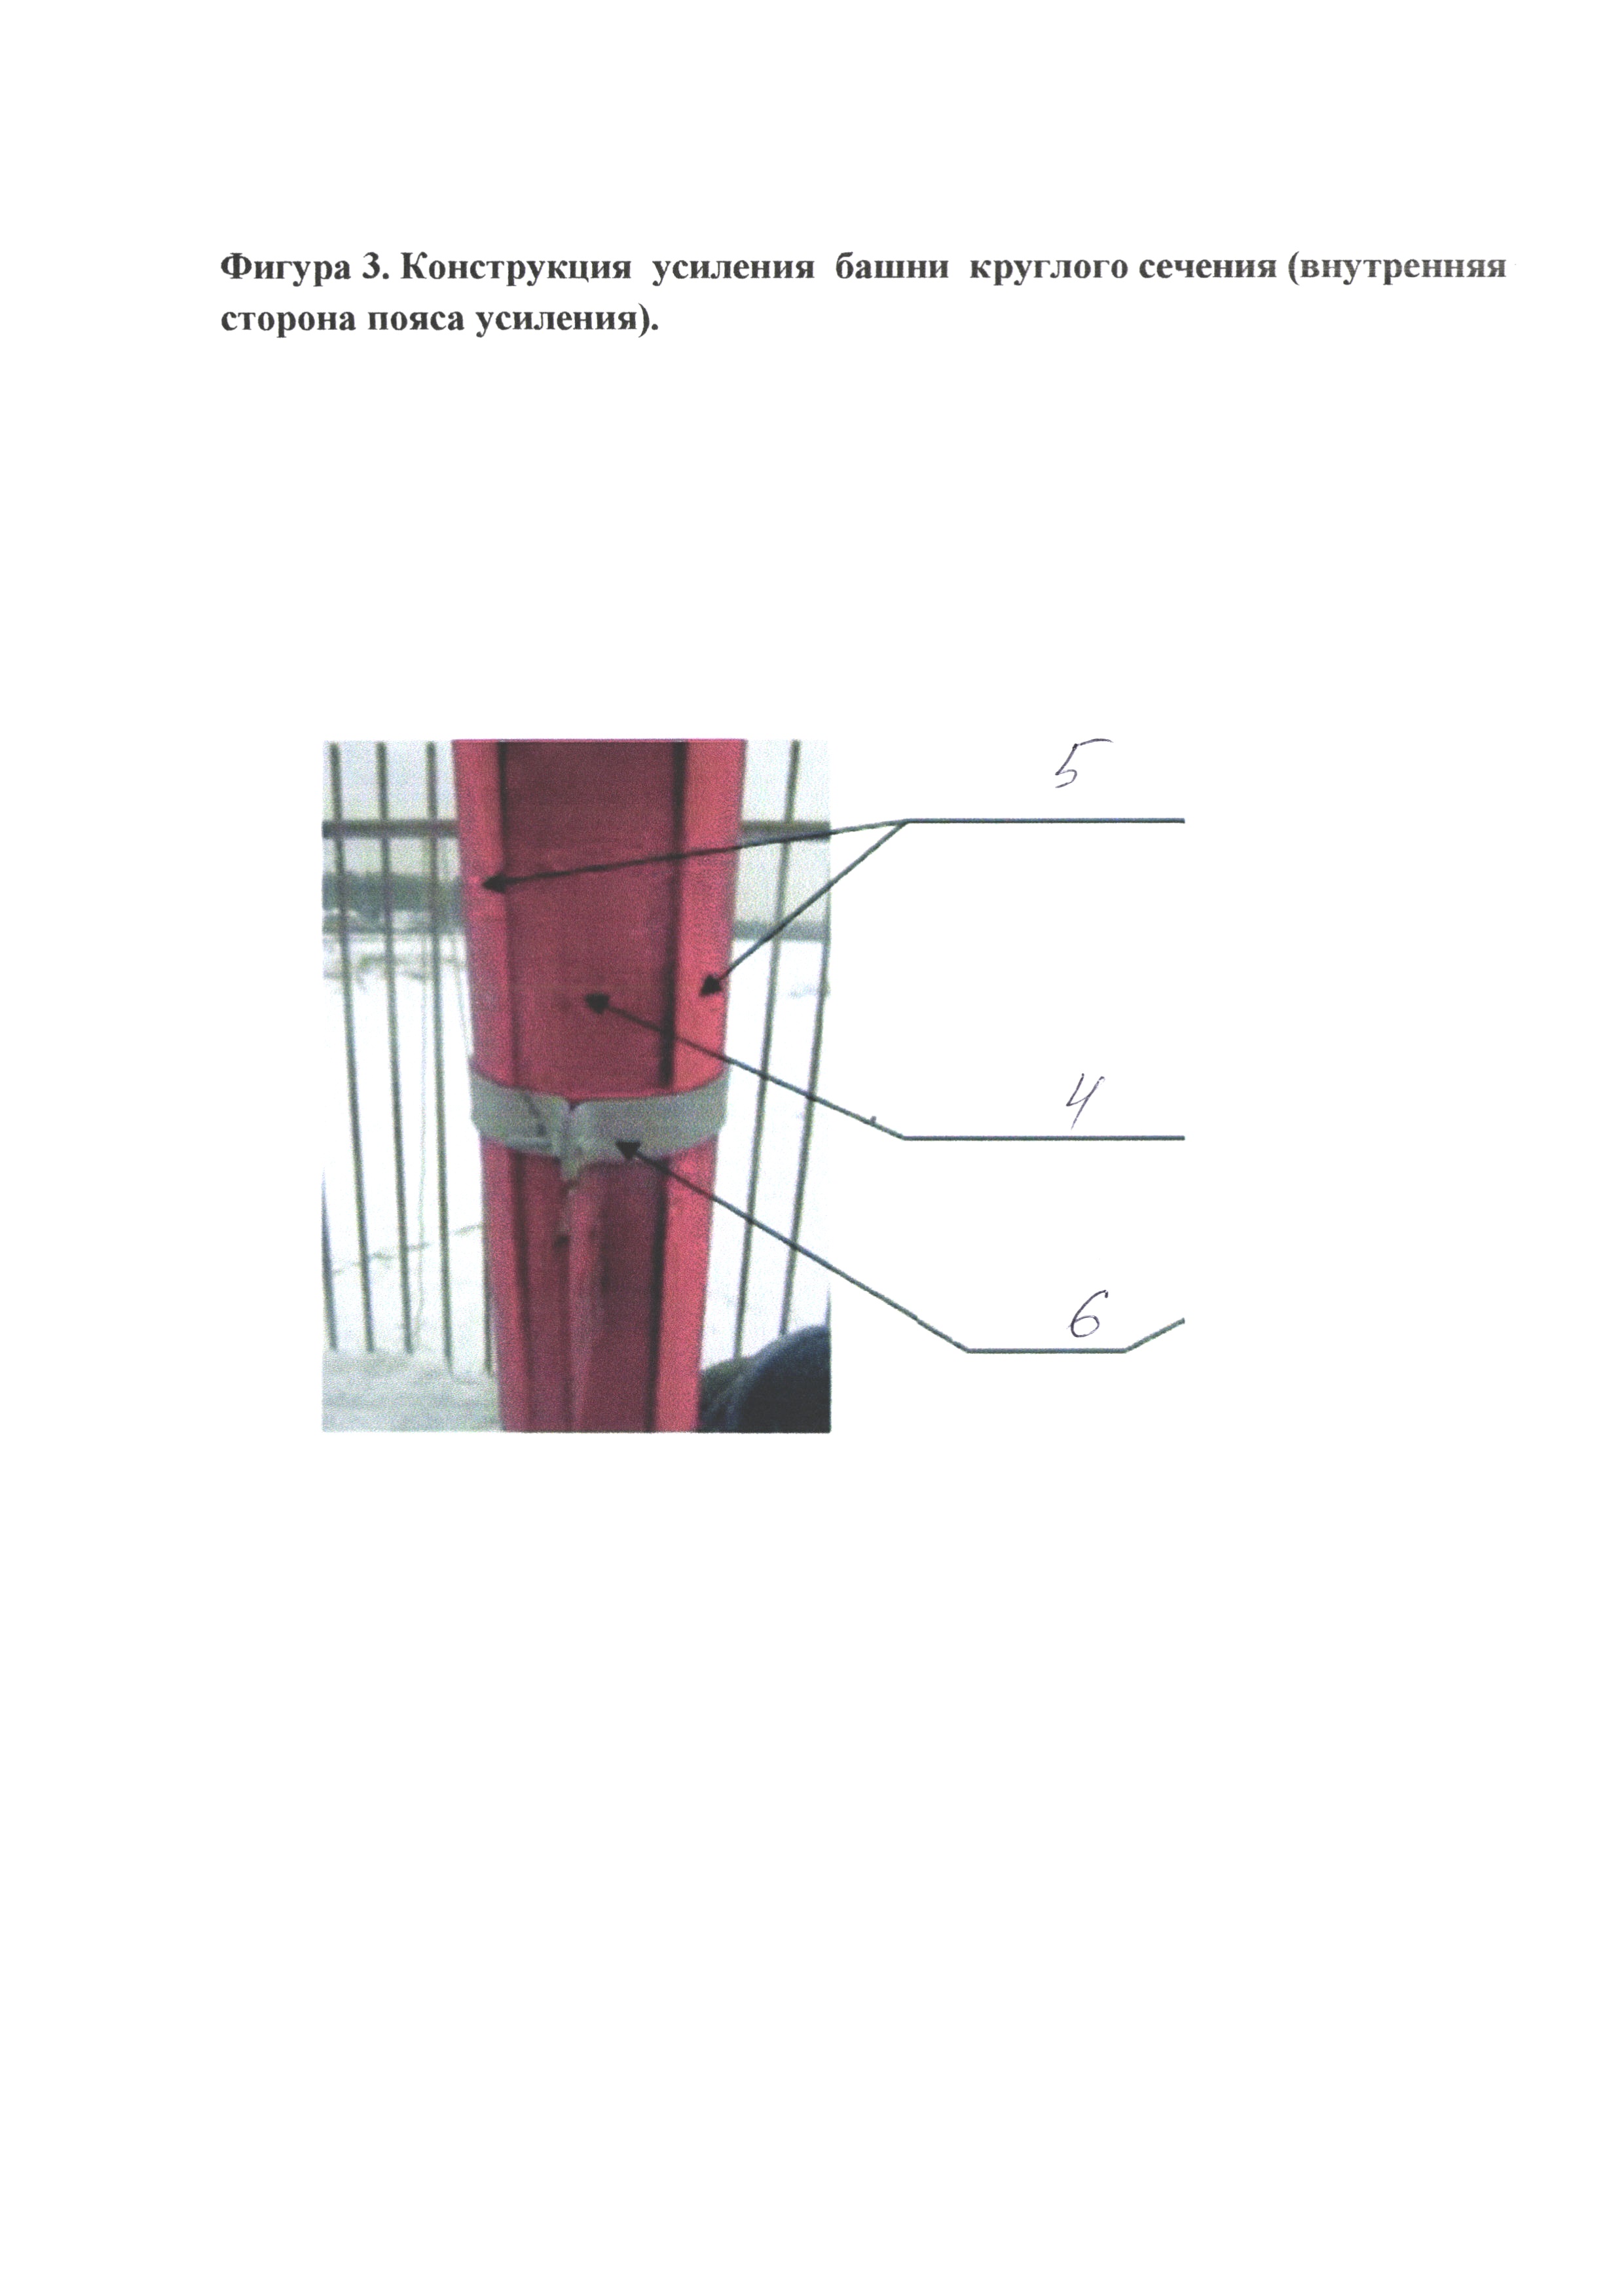 Способ разрезания плазморезом стальной круглой трубы вдоль продольной оси, конструкция усиления башни круглого сечения и элемент усиления